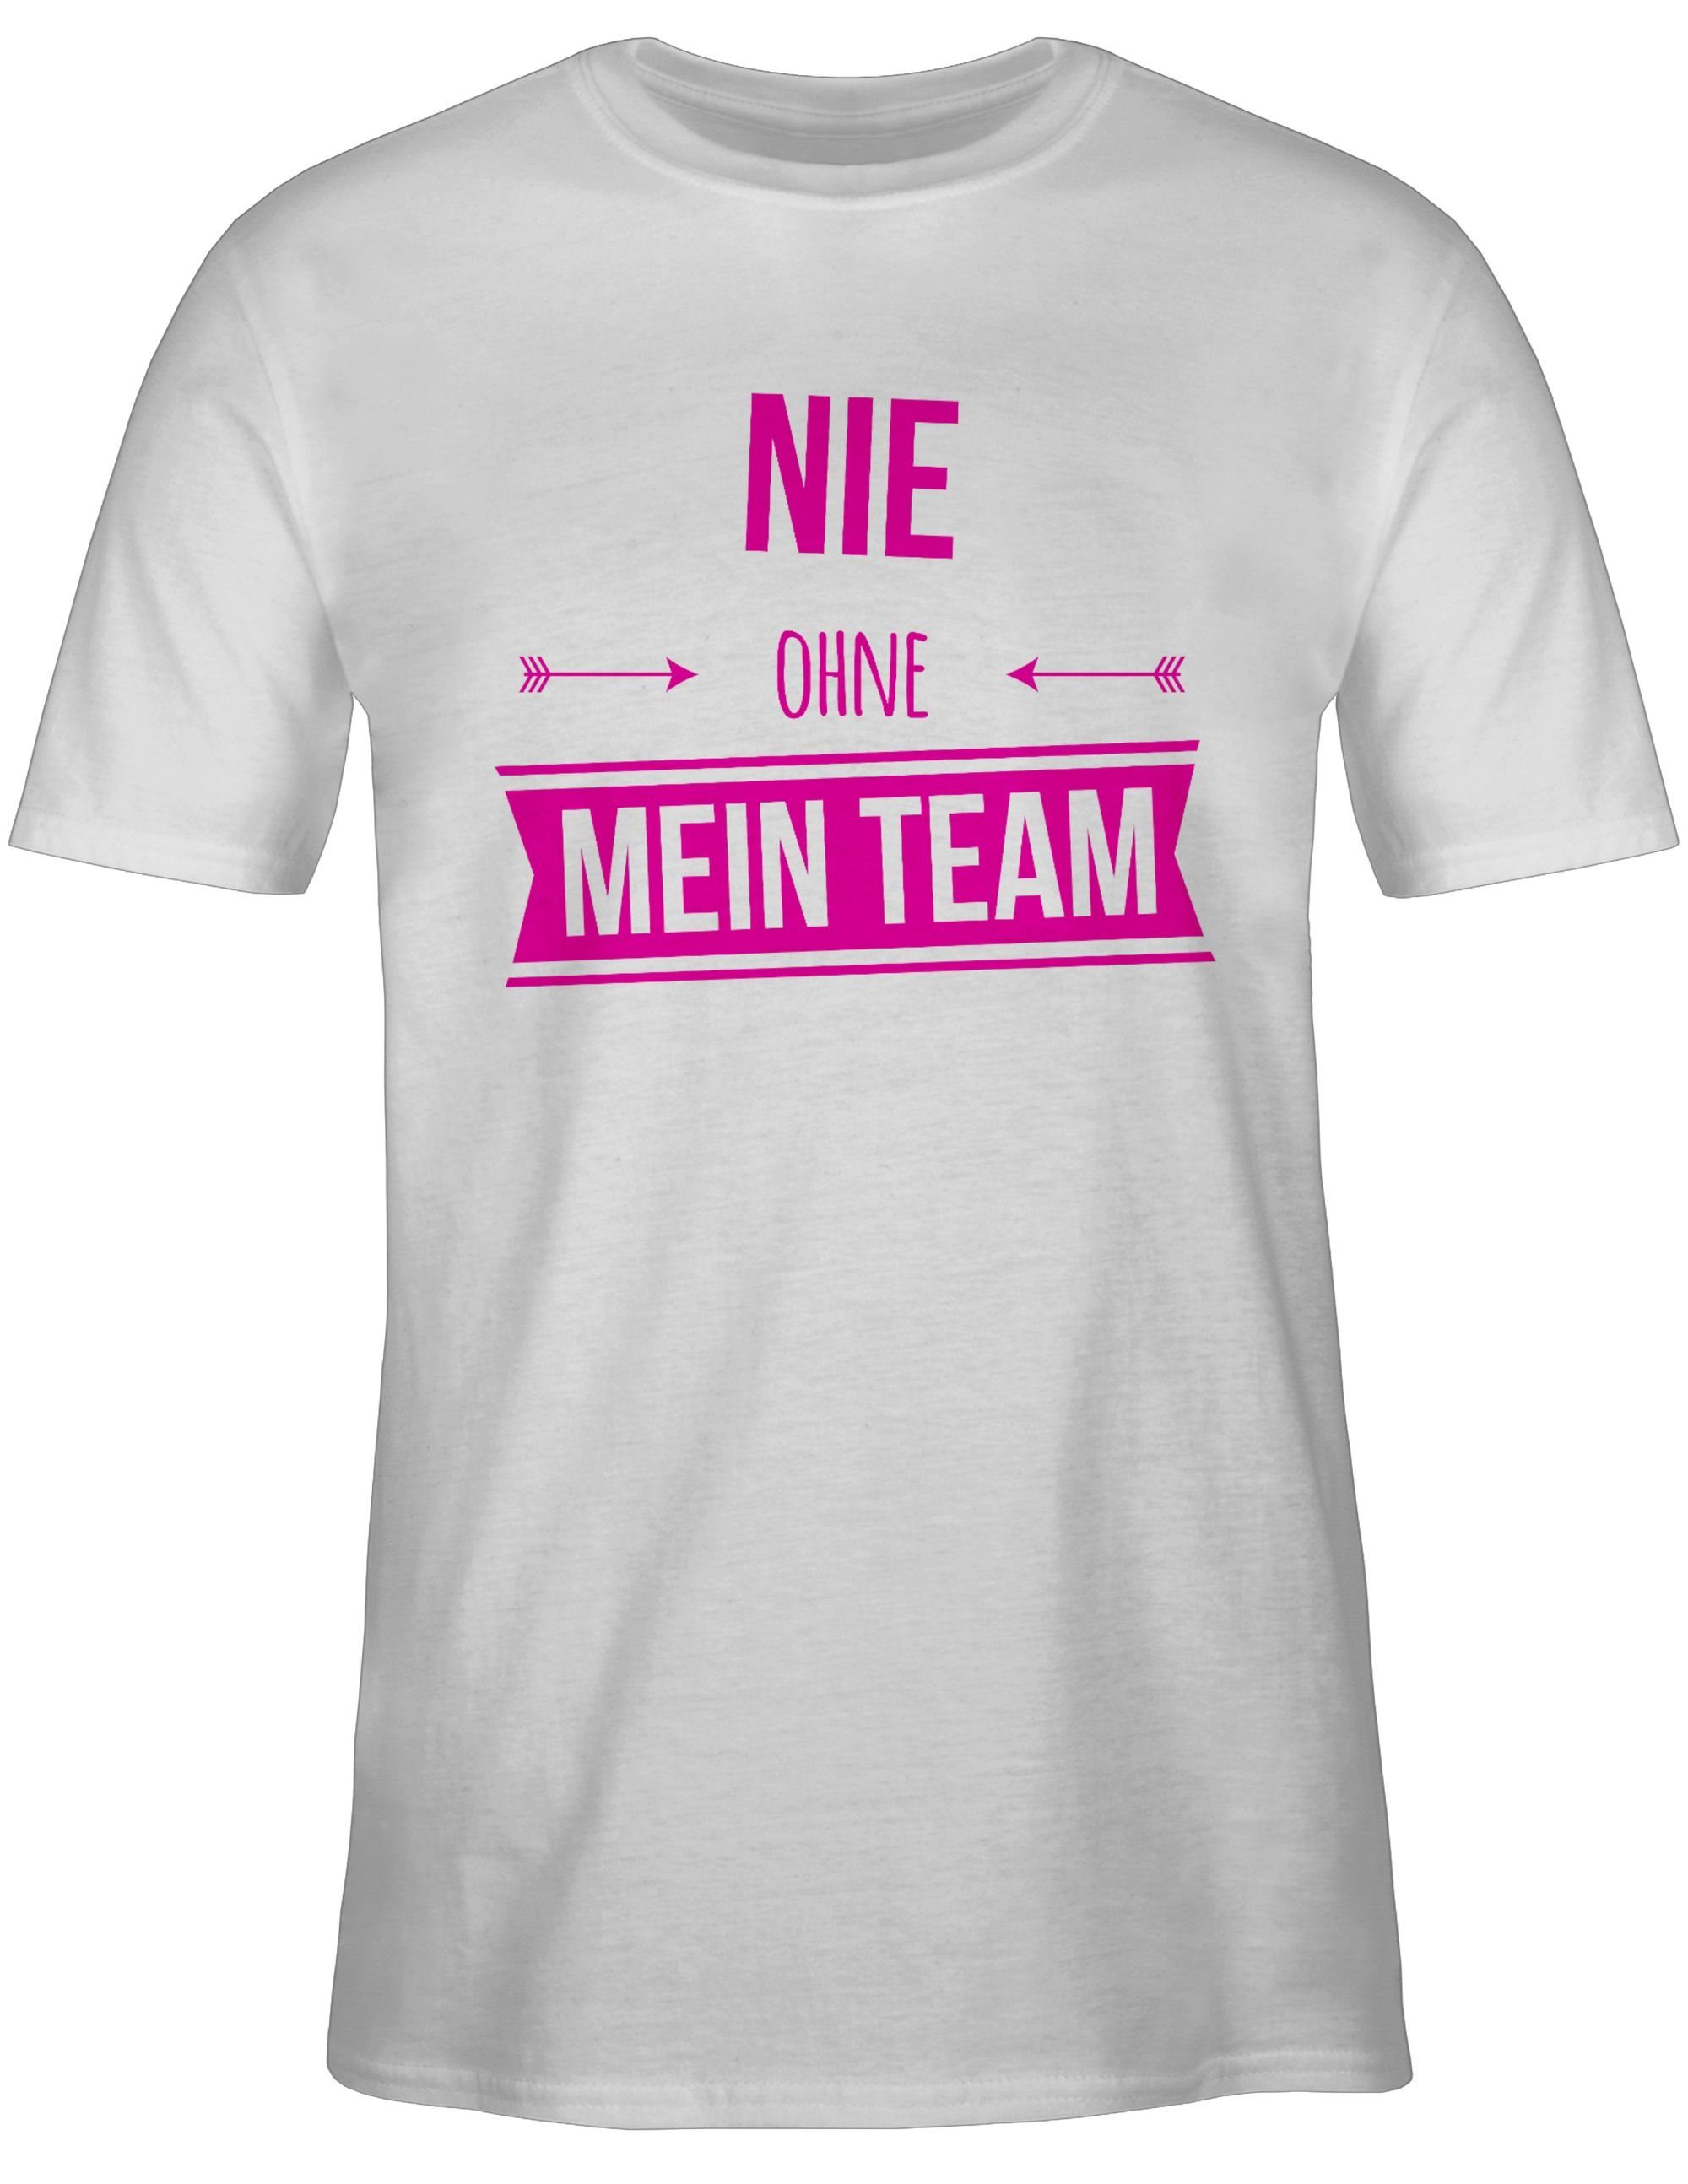 Shirtracer T-Shirt Nie ohne mein Team Pink - Sprüche Statement mit Spruch -  Herren Premium T-Shirt shirt herren schwarz spruch - t-shirt team bride -  tshirt männer jga